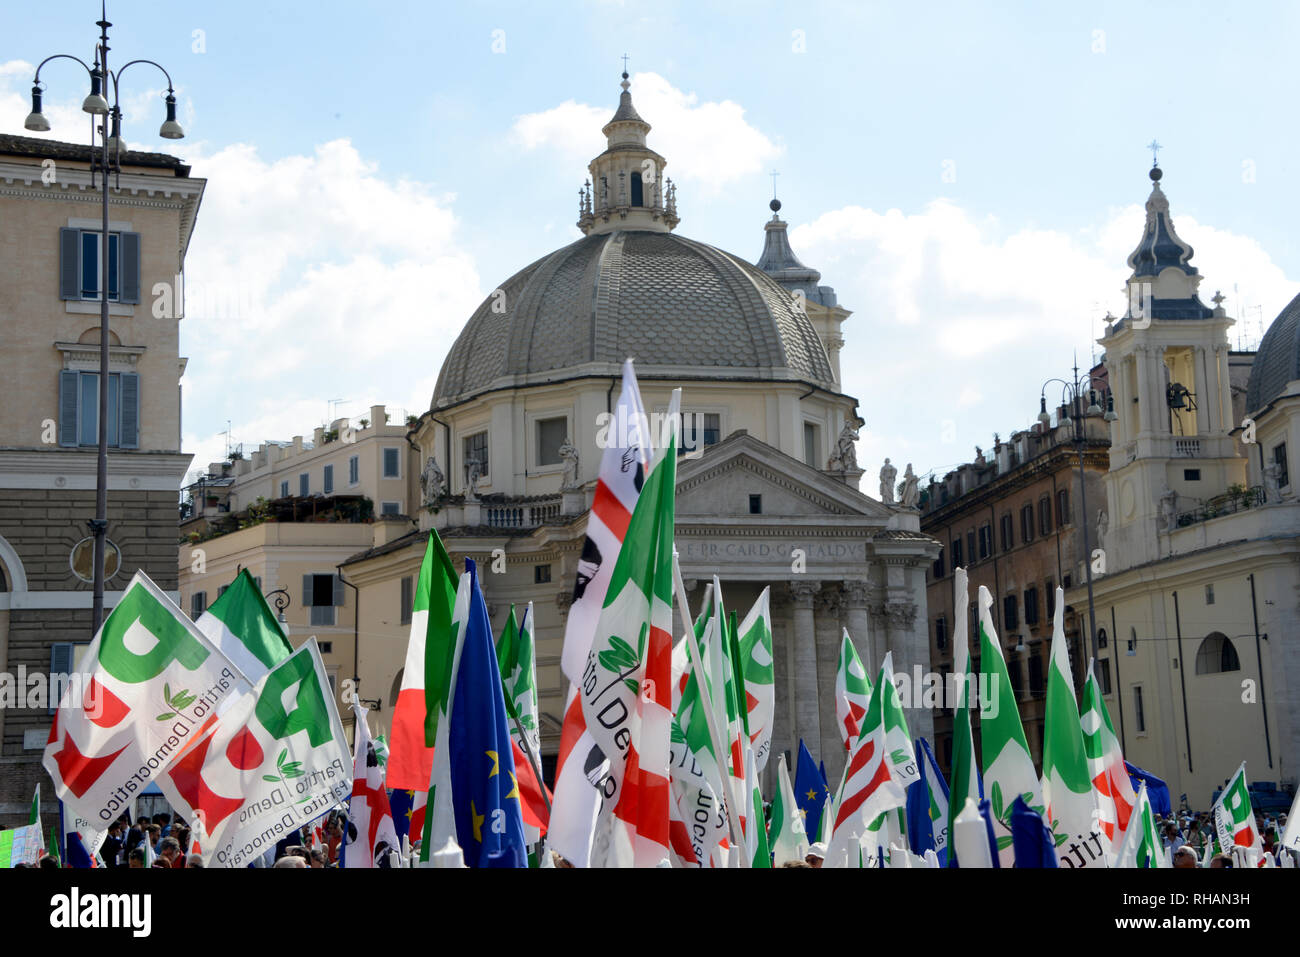 Roma - Septiembre 30, 2018: Demostrators y banderas durante "Per un'Italia che non ha paura", el evento del Partido Democrático italiano. Foto de stock